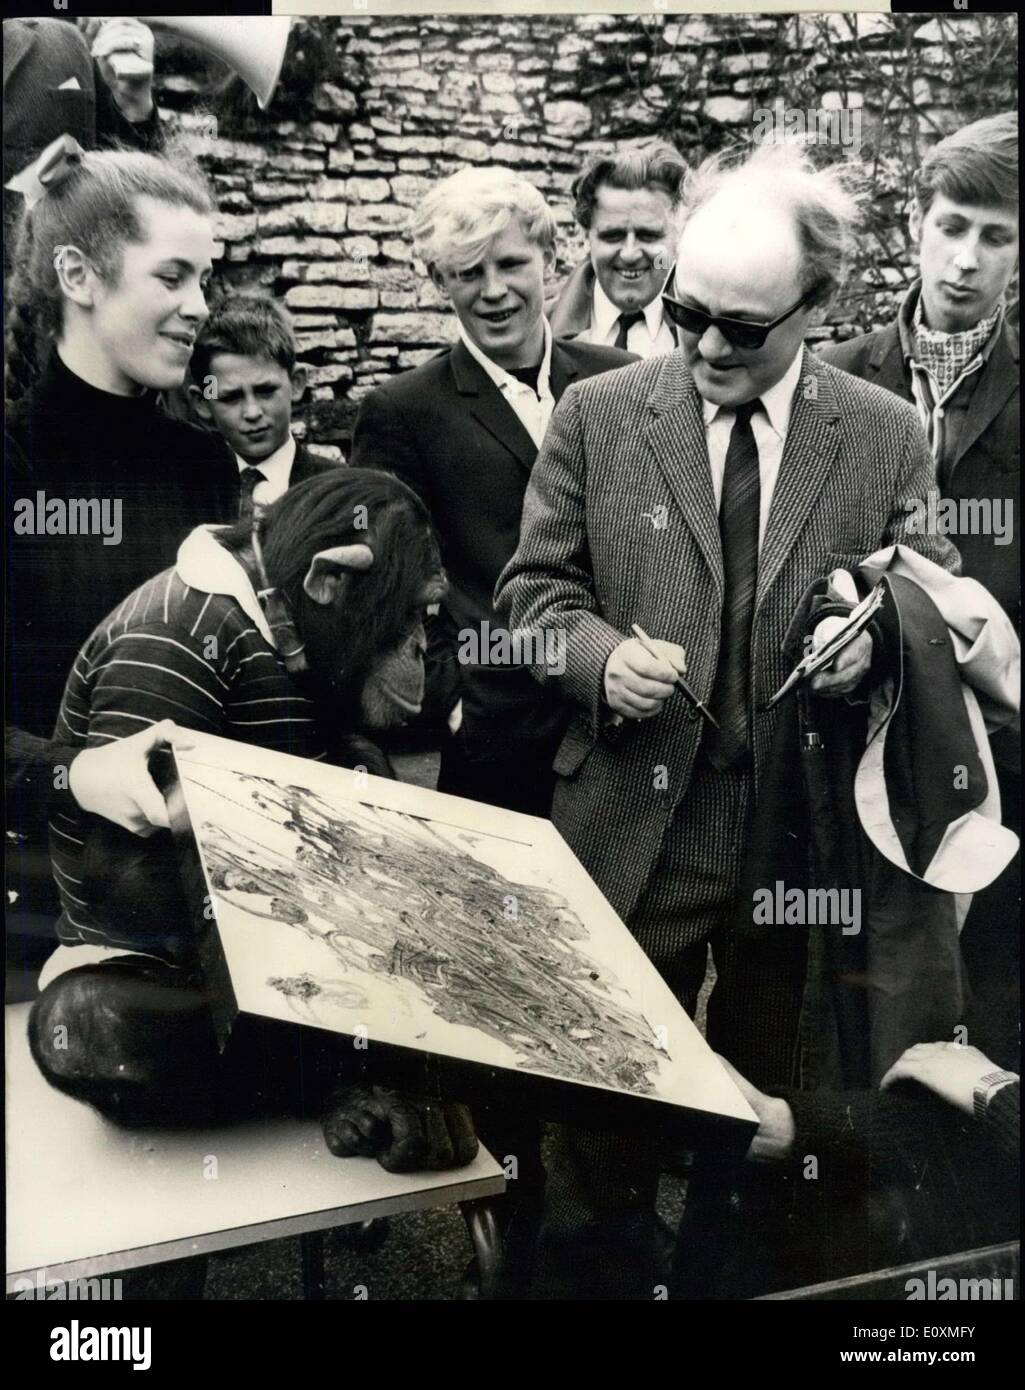 31 mai 1967 - Les oeuvres d'art par un singe mis aux enchères : Quinze des tableaux d'un cinq-année-vieux singe, Cindy Lou, qui a peint de couleur multi-aplodges pendant un an à la Zoo de Dudley, Worcester, ont été vendus à une vente aux enchères. L'éducation a été menée par Birmingham commissaire-priseur. M. Brish Davies. Aucun des 10 premiers lots atteint la marque 2. Mais, alors, quand Lot ll Henley-in-Arden, Warwicks, payé 15.10s, après une rapide séance d'enchères. Au total, la vente aux enchères 39,8 soulevé s.6d.pour le Fonds mondial pour la nature Banque D'Images